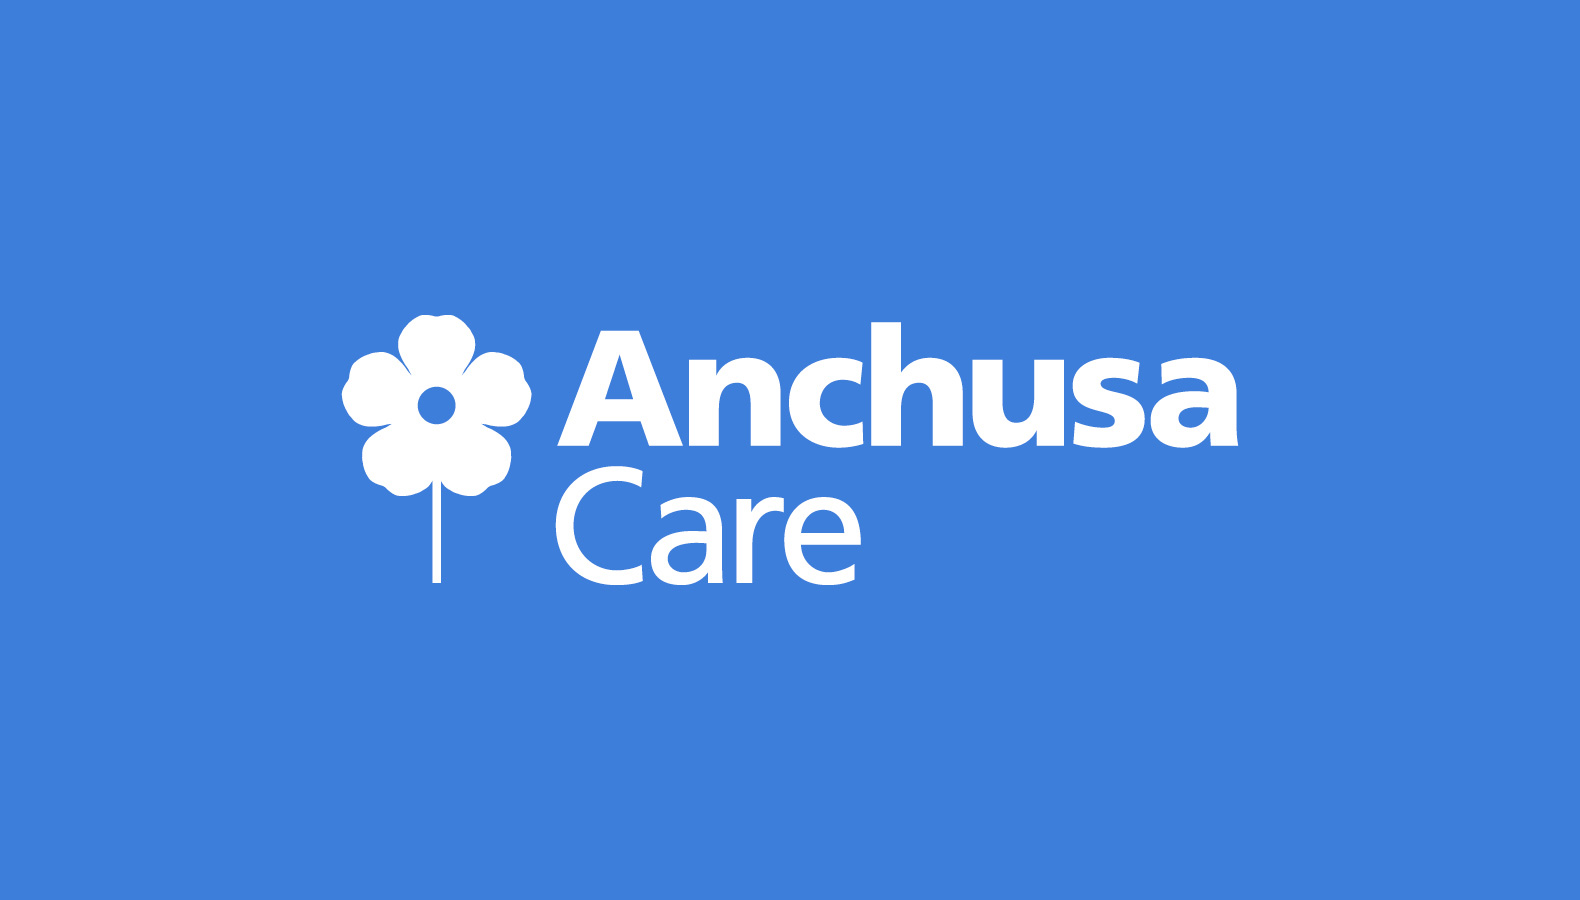 Anchusa Care – Identity